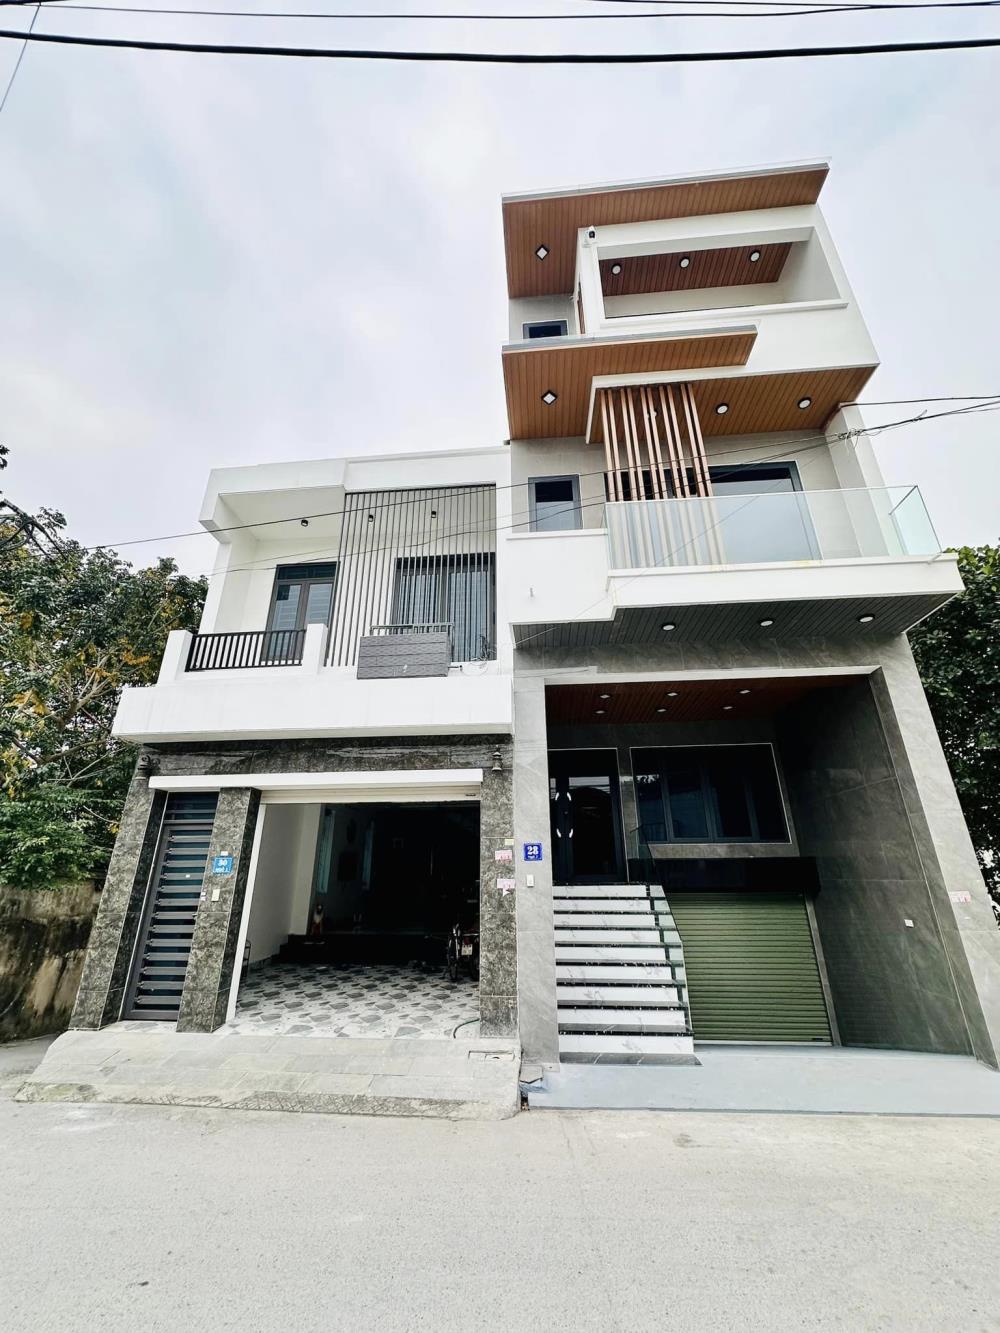 Chính chủ cho thuê nhà mới xây tại số 30 ngõ 2 đường Tôn Đức Thắng - Khai Quang ( gần copmax )1269123